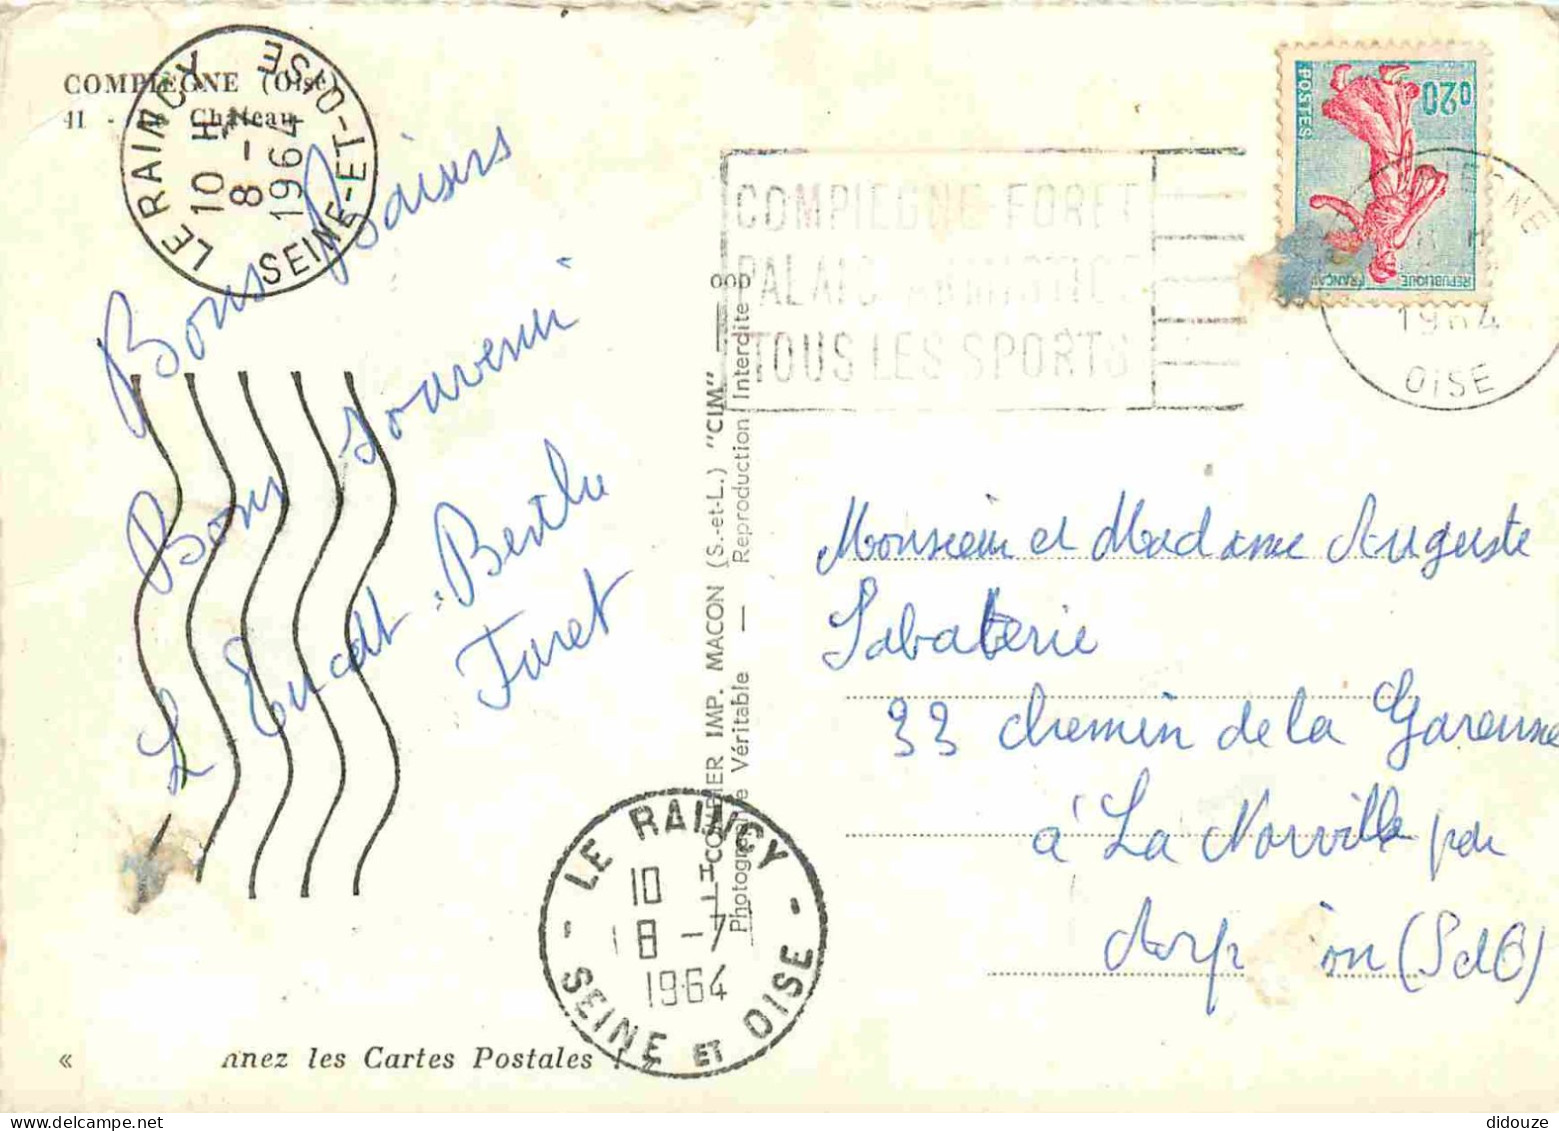 60 - Compiègne - Le Chateau - Mention Photographie Véritable - Carte Dentelée - CPSM Grand Format - Etat Froissure Visib - Compiegne